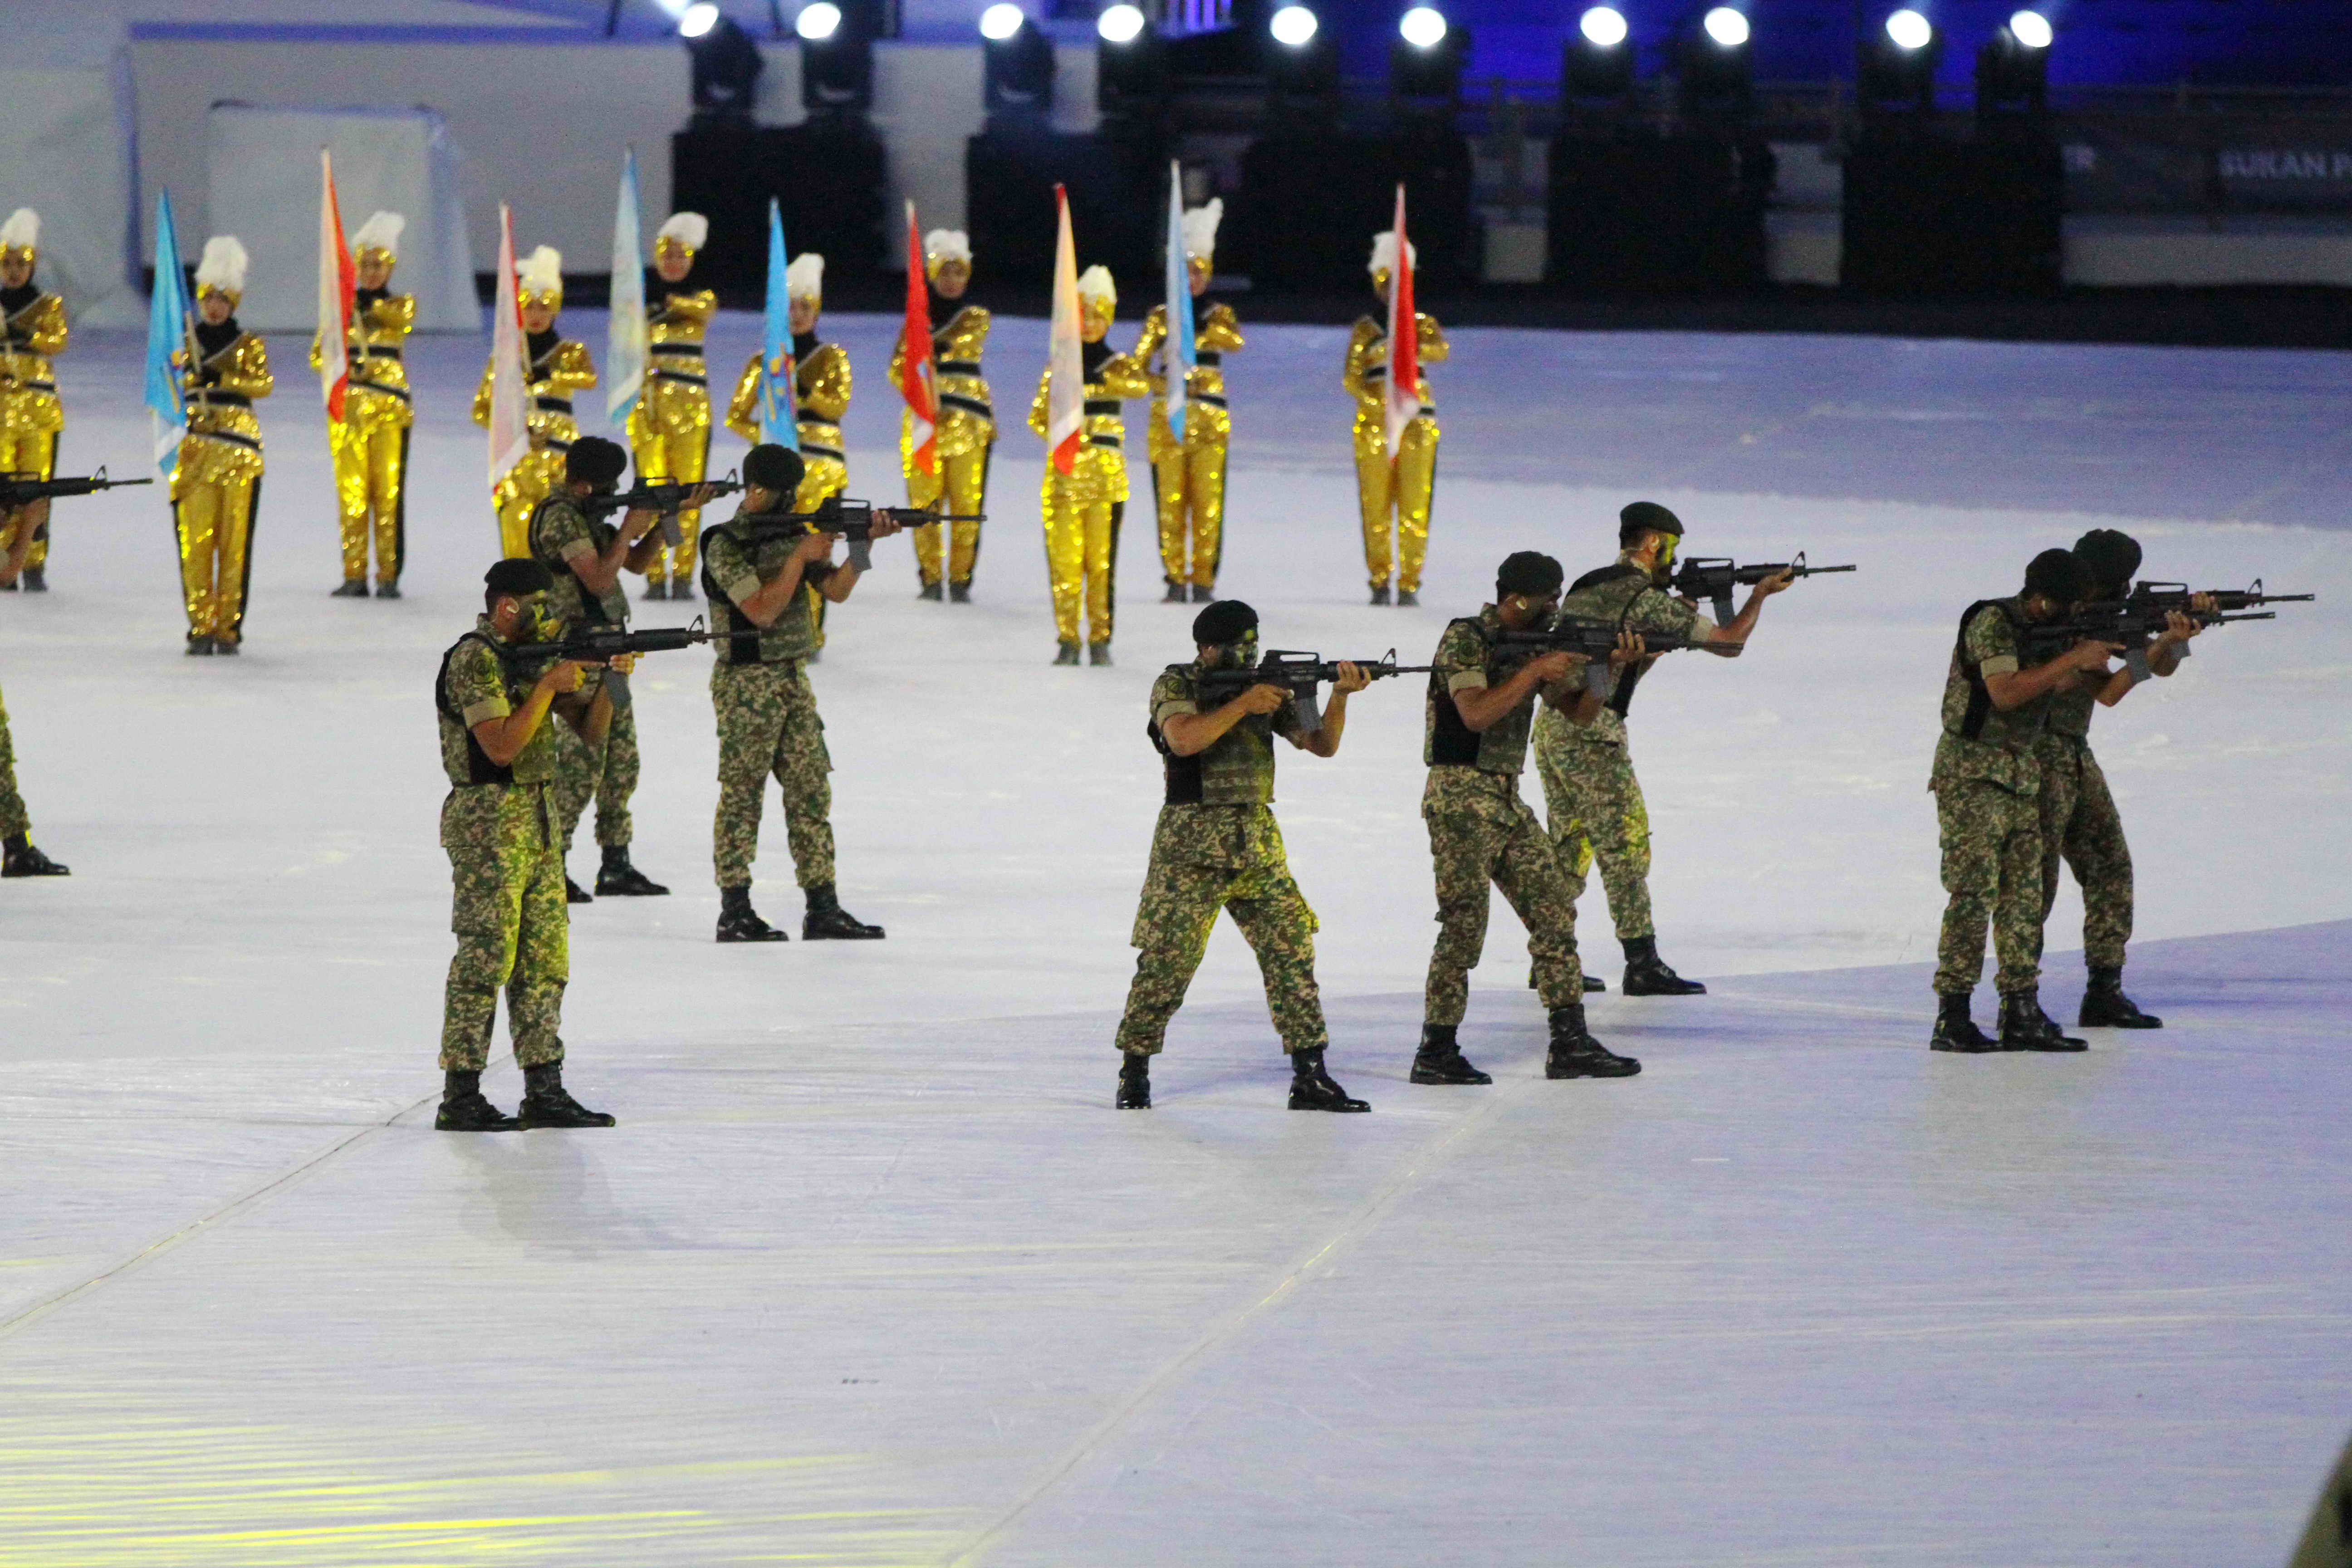 Malaysia mở màn lễ khai mạc độc đáo bằng hình ảnh những người lính bảo vệ đất nước. Ảnh: T.P